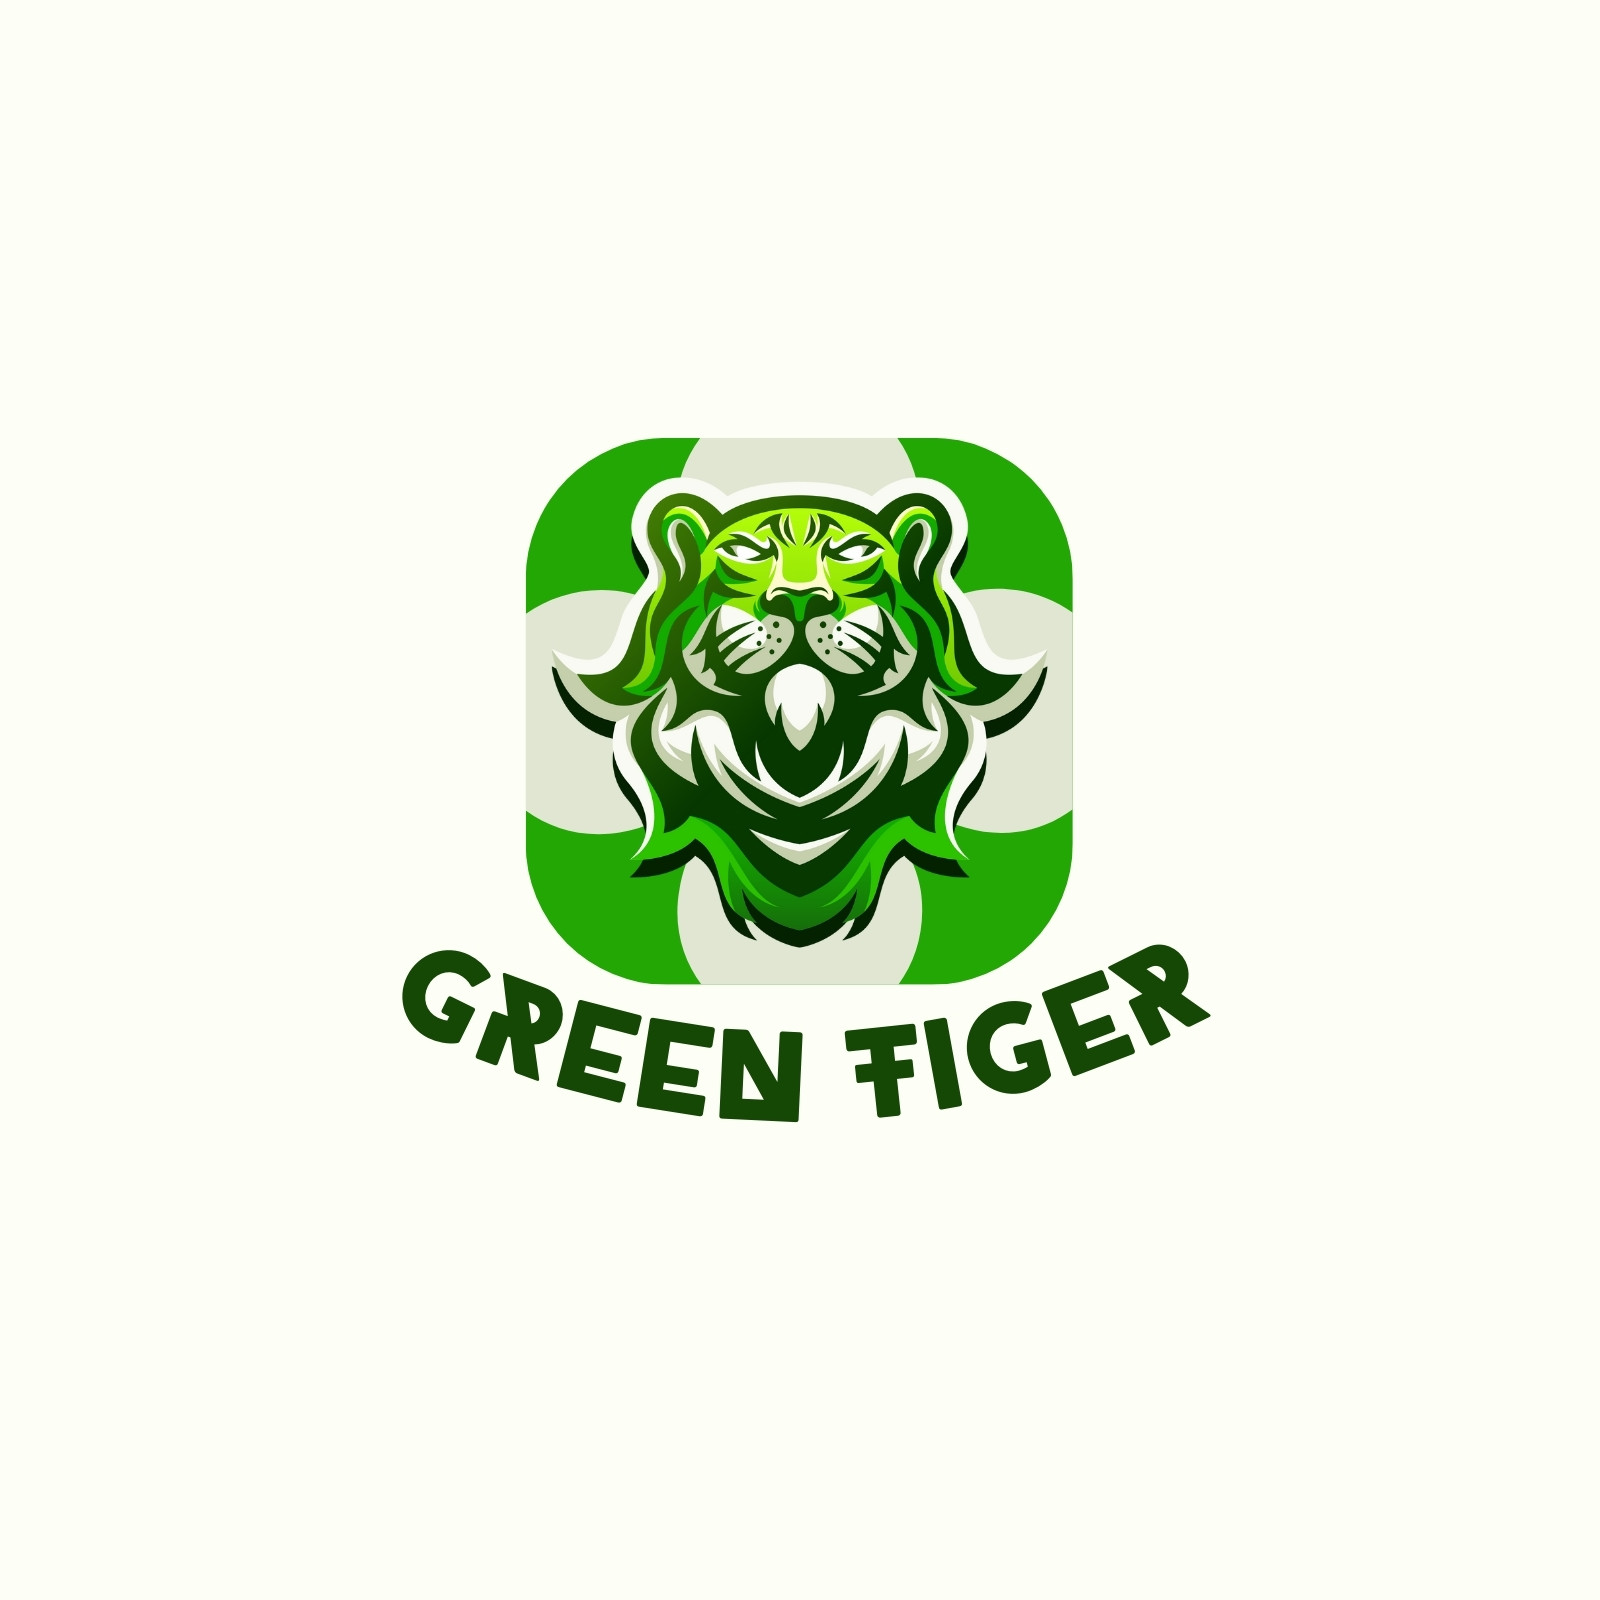 Tiger Logo Vector NEW: Ai, SVG, EPS, Pdf, Png - Etsy Israel